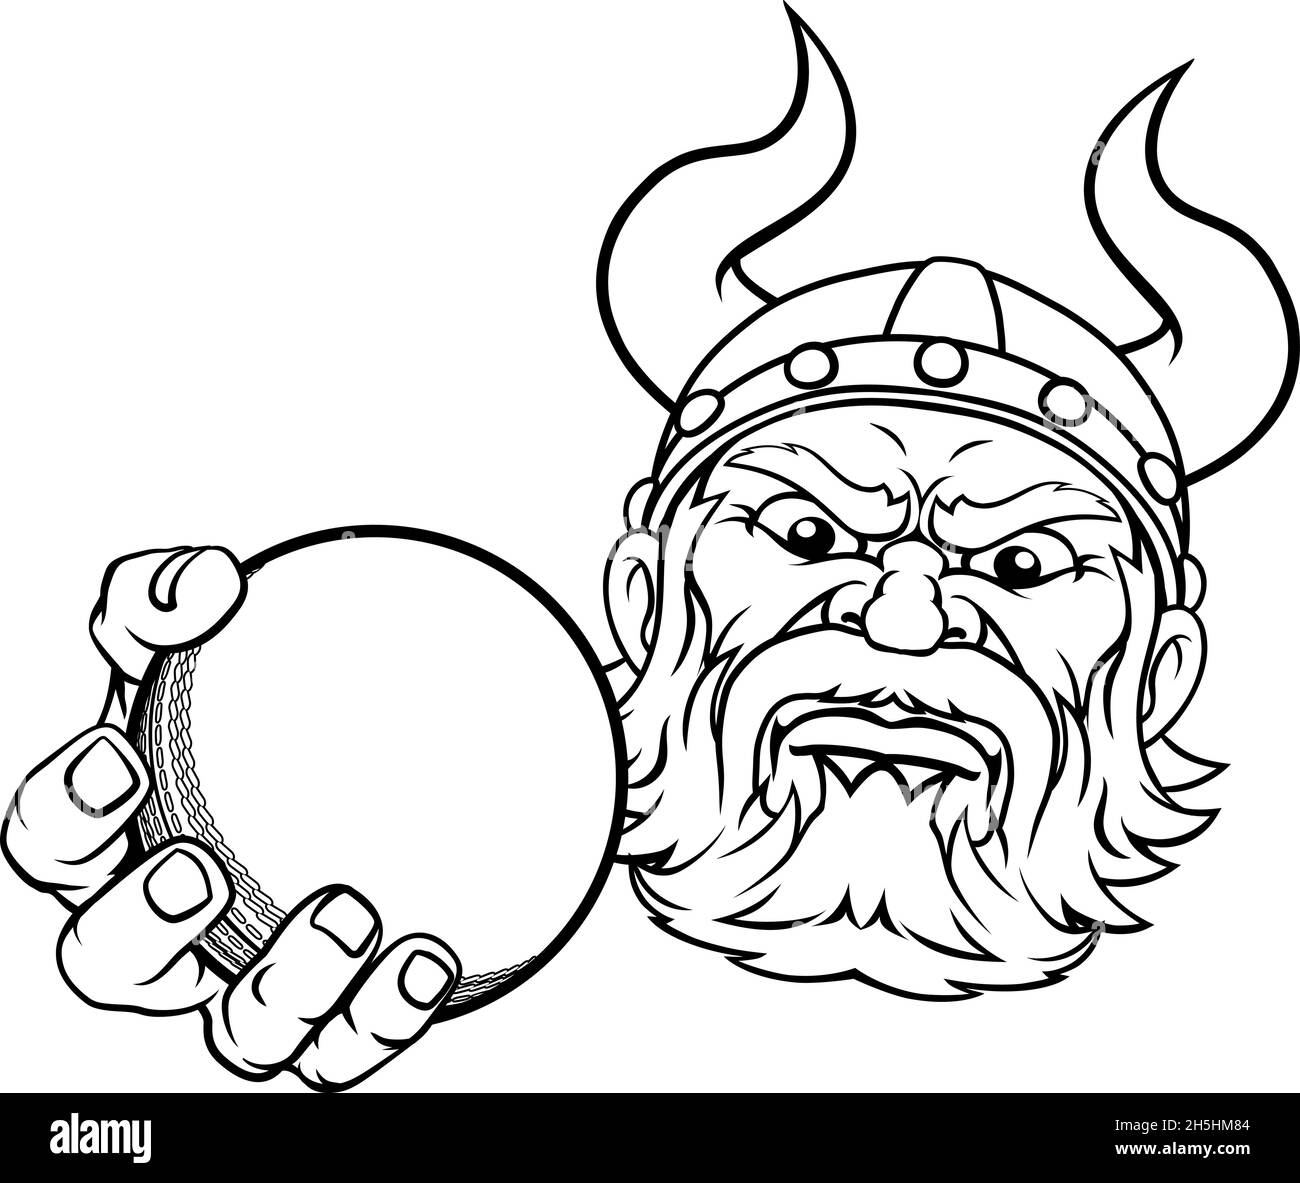 Viking Cricket ball Sports Mascot Cartoon Illustration de Vecteur